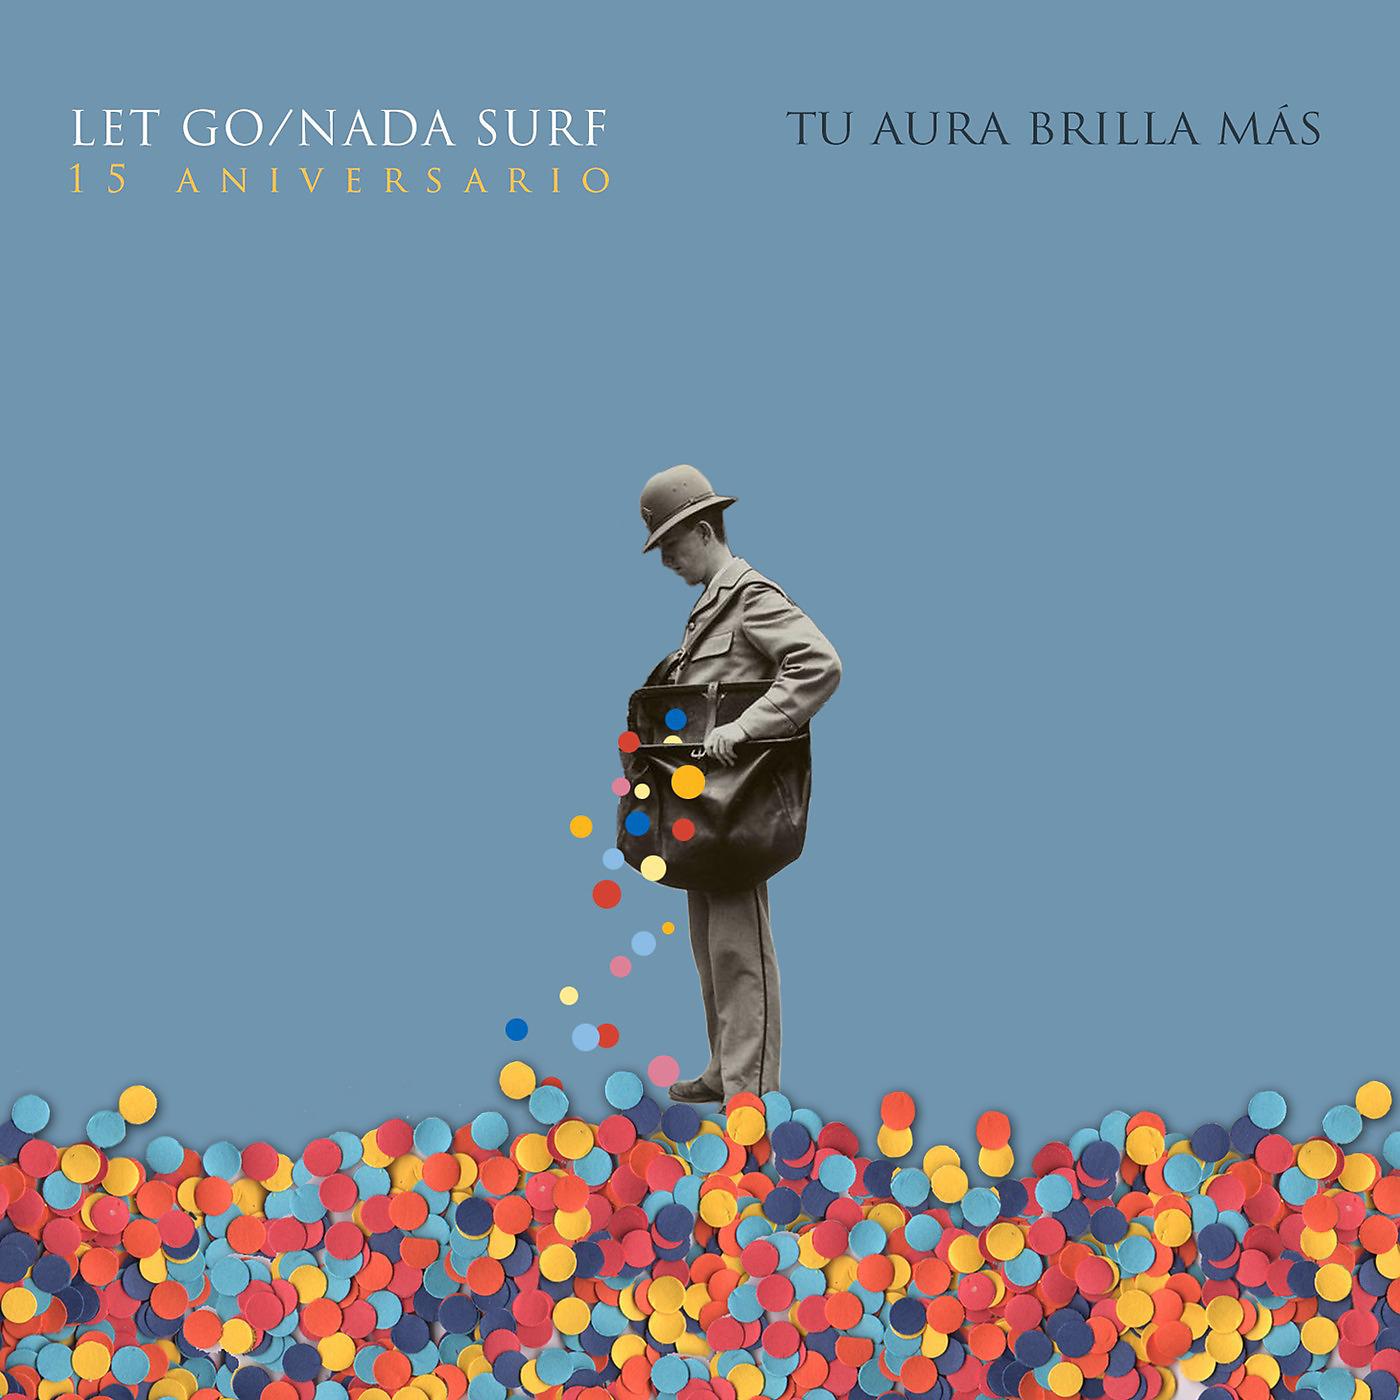 Постер альбома Tu Aura Brilla Más: Let Go/Nada Surf, 15 Aniversario